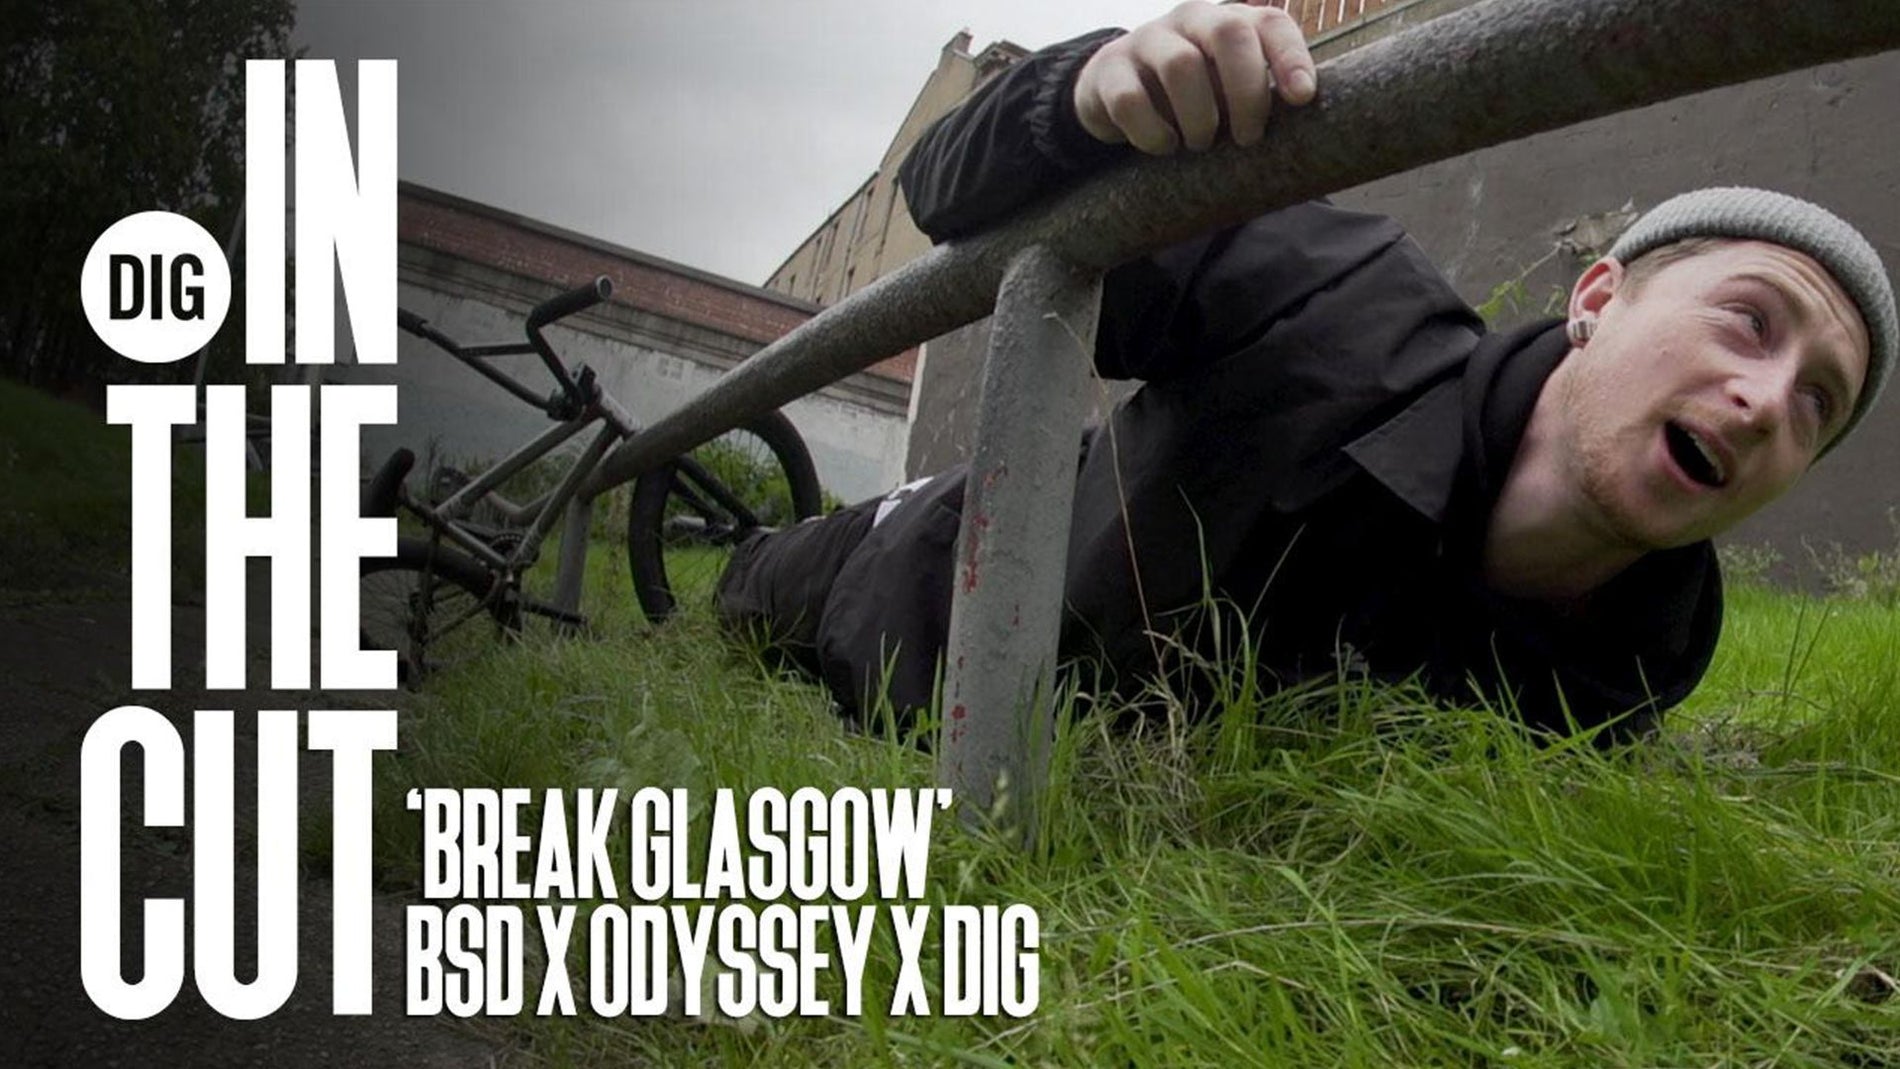 Break Glasgow - In The Cut